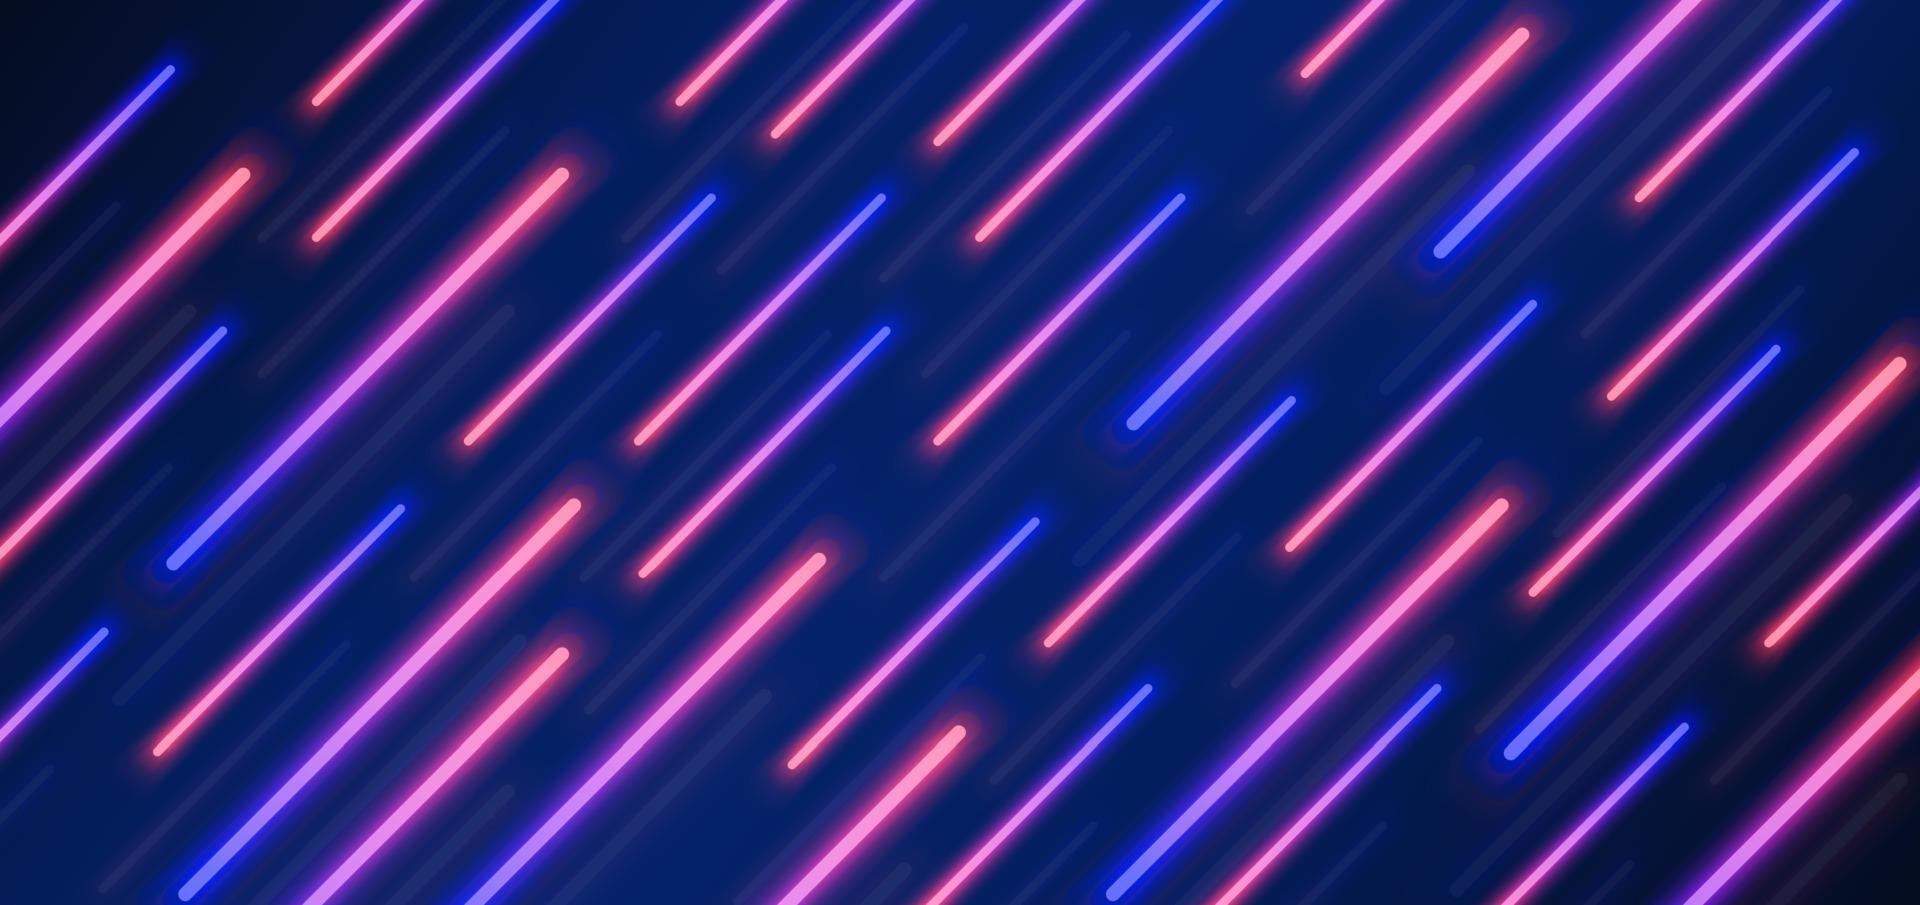 astratto futuristico blu e rosso lampada effetto di illuminazione al neon diagonale su sfondo blu scuro. vettore